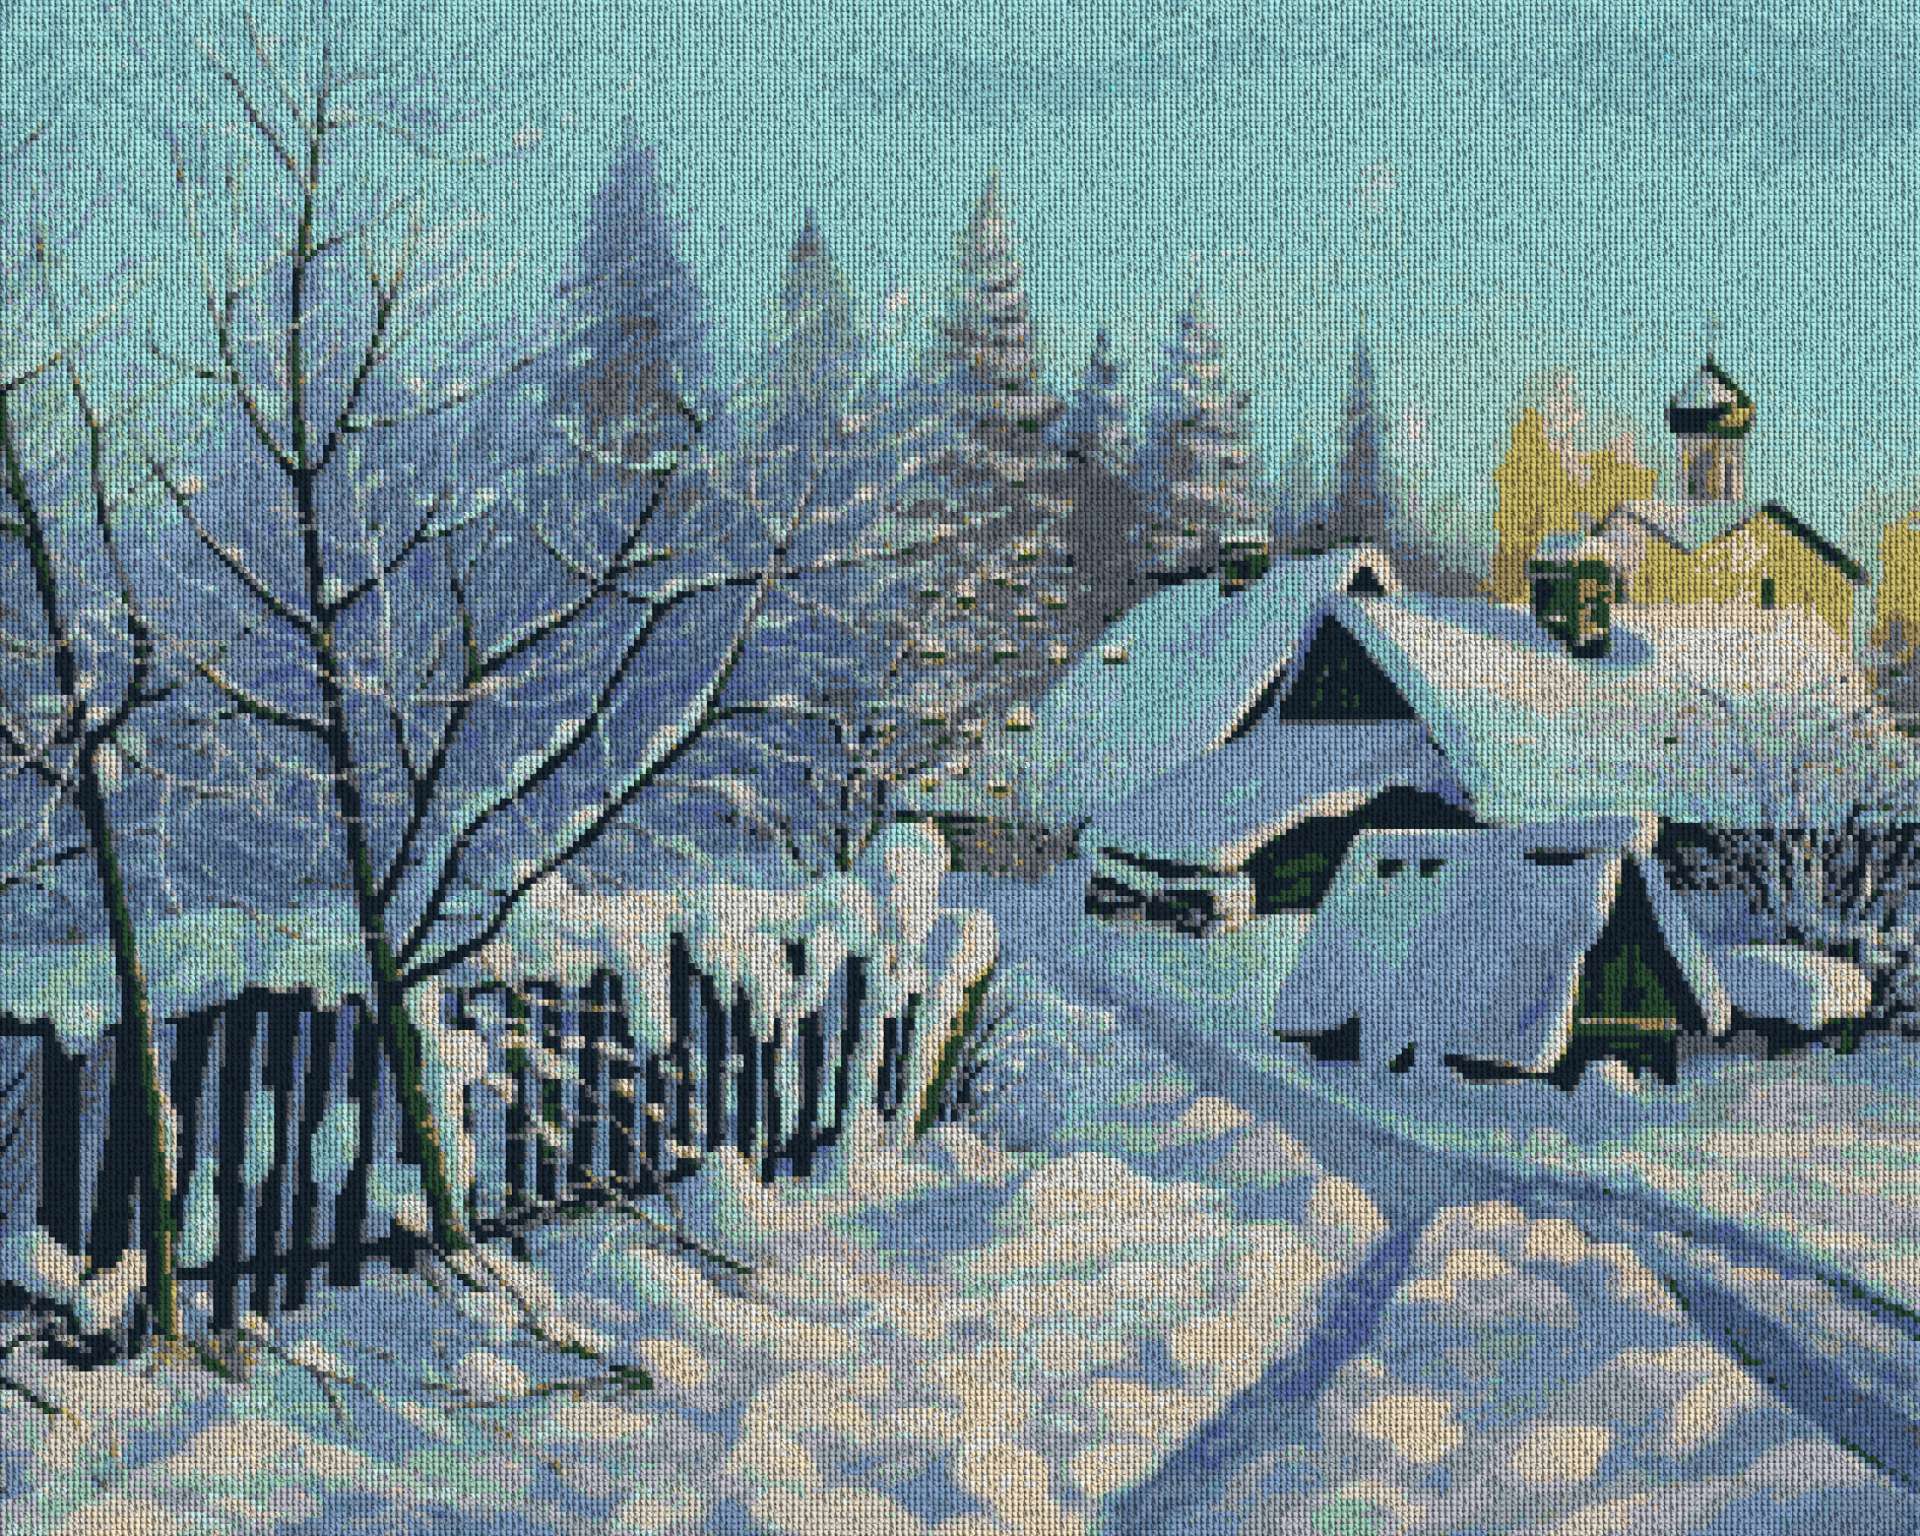 Зимняя деревня живопись